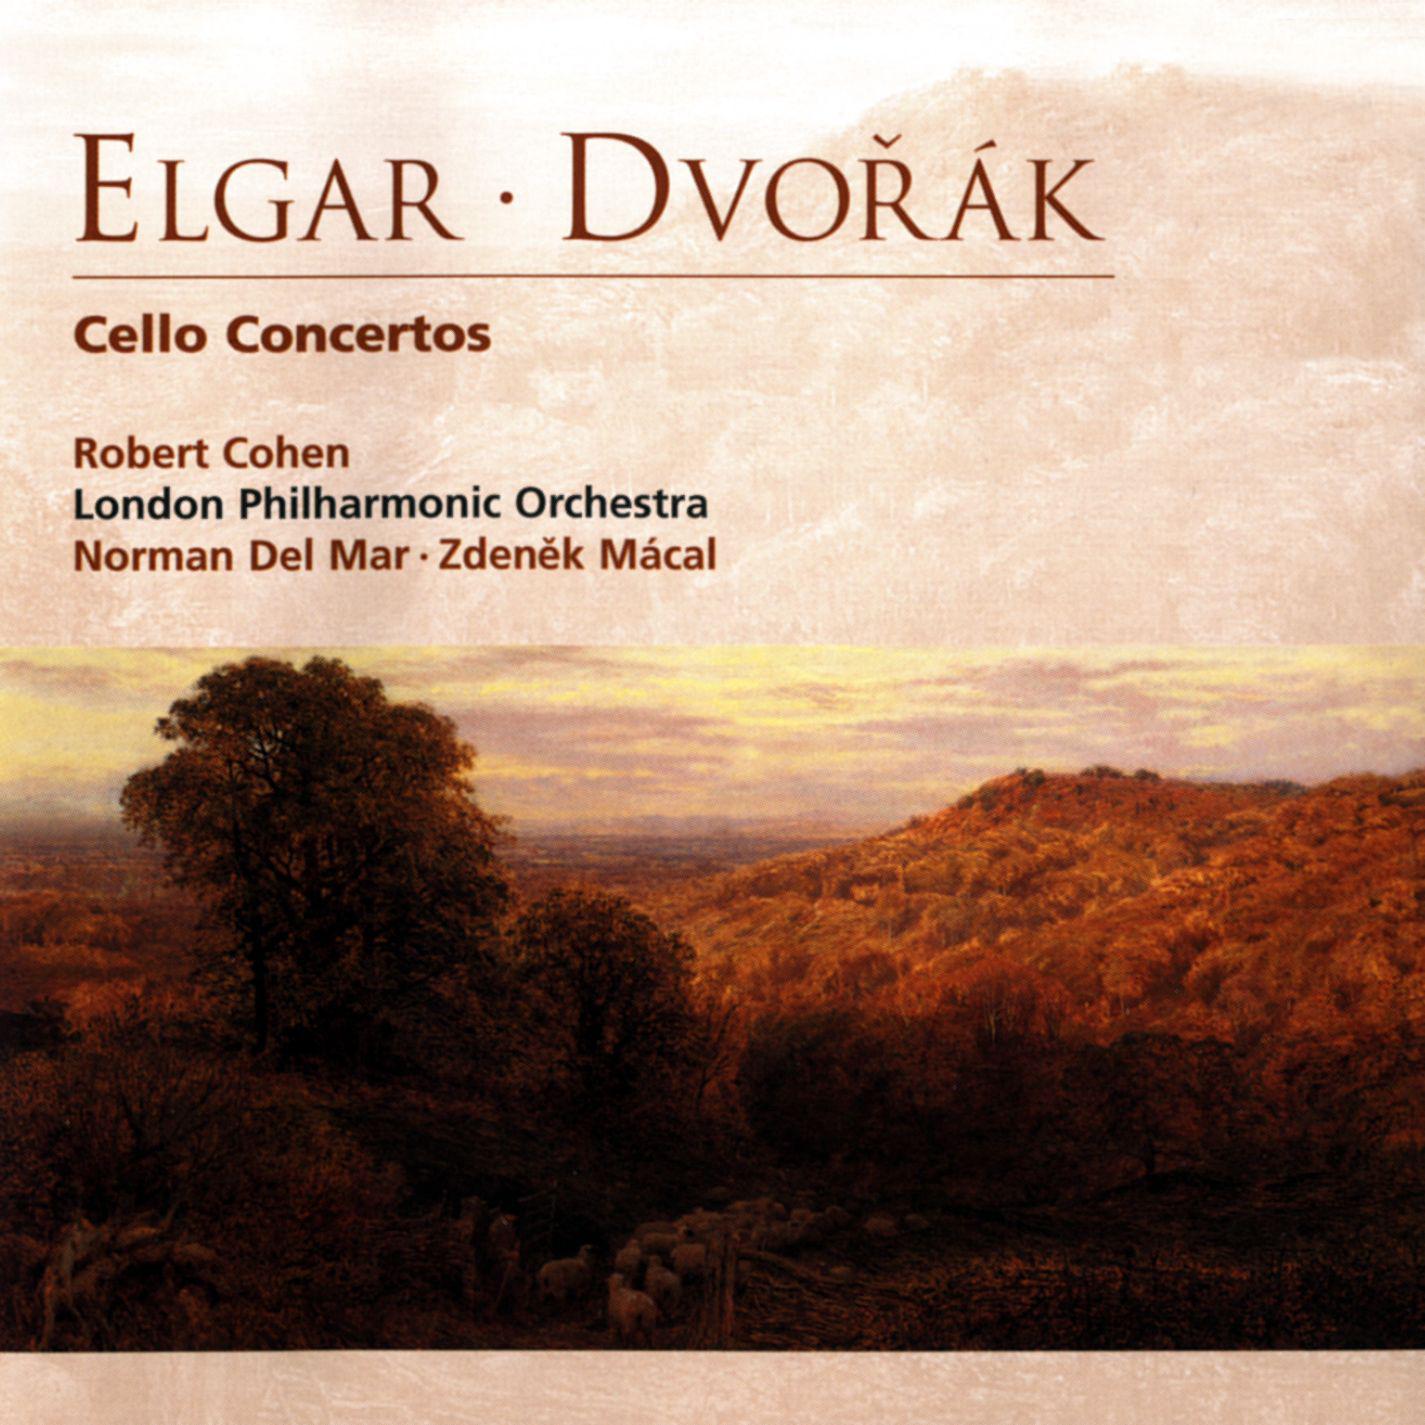 Cello Concerto in E Minor, Op. 85:I. Adagio - Moderato